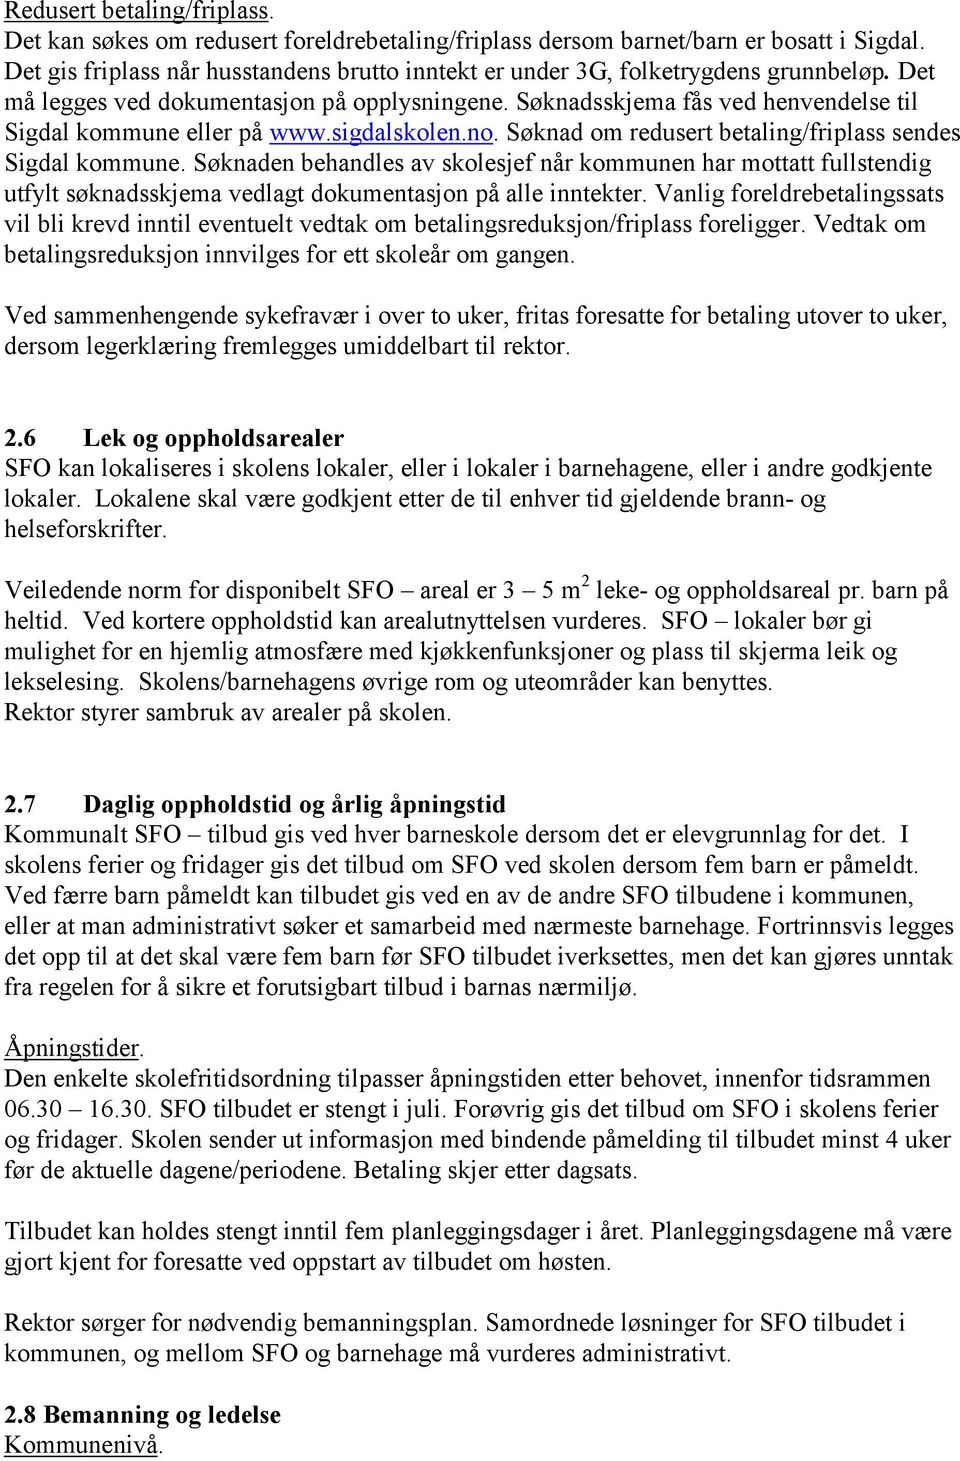 Søknadsskjema fås ved henvendelse til Sigdal kommune eller på www.sigdalskolen.no. Søknad om redusert betaling/friplass sendes Sigdal kommune.